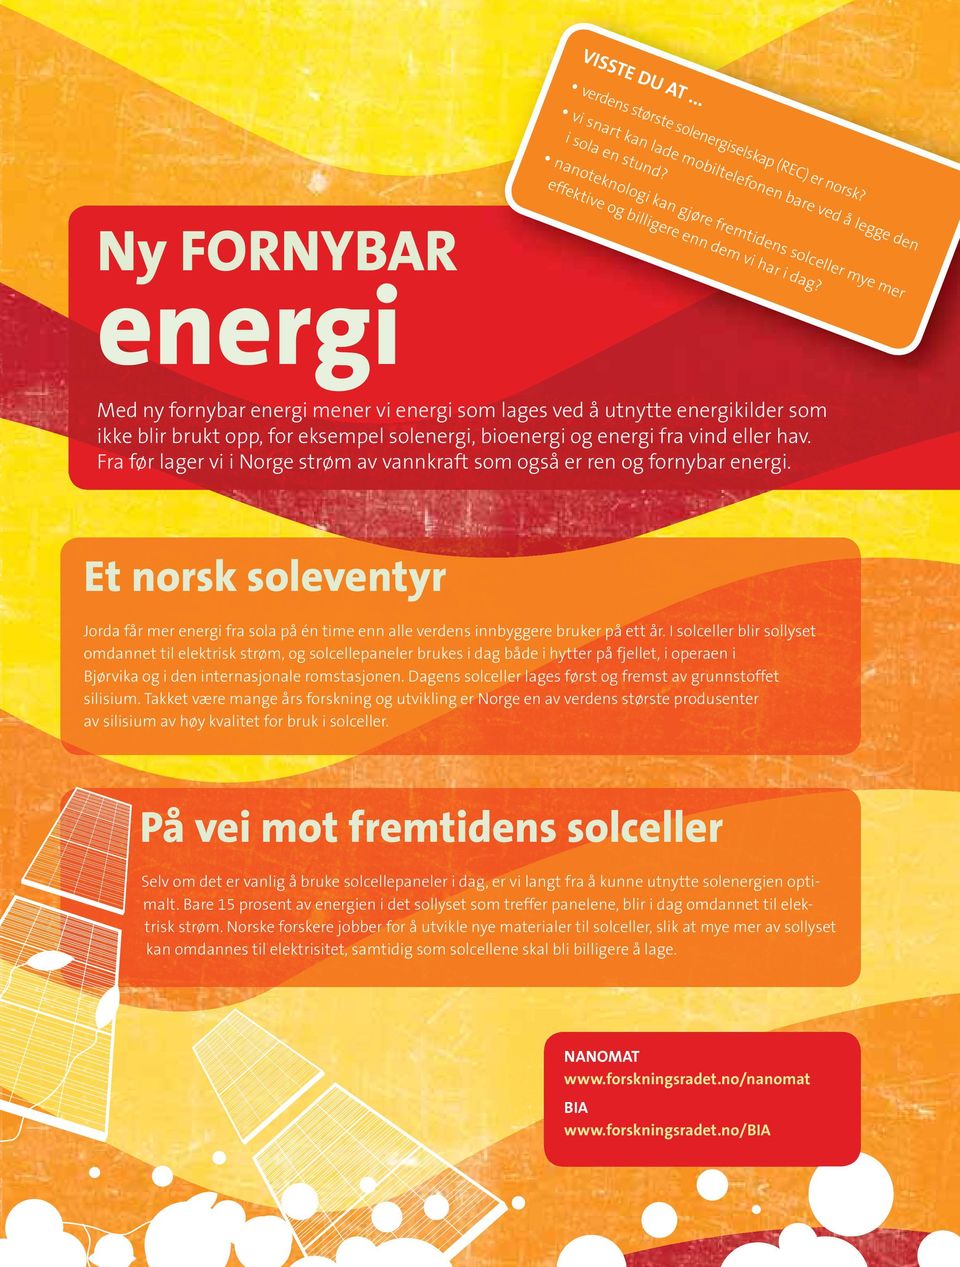 bioenergi og energi fra vind eller hav. Fra før lager vi i Norge strøm av vannkraft som også er ren og fornybar energi.